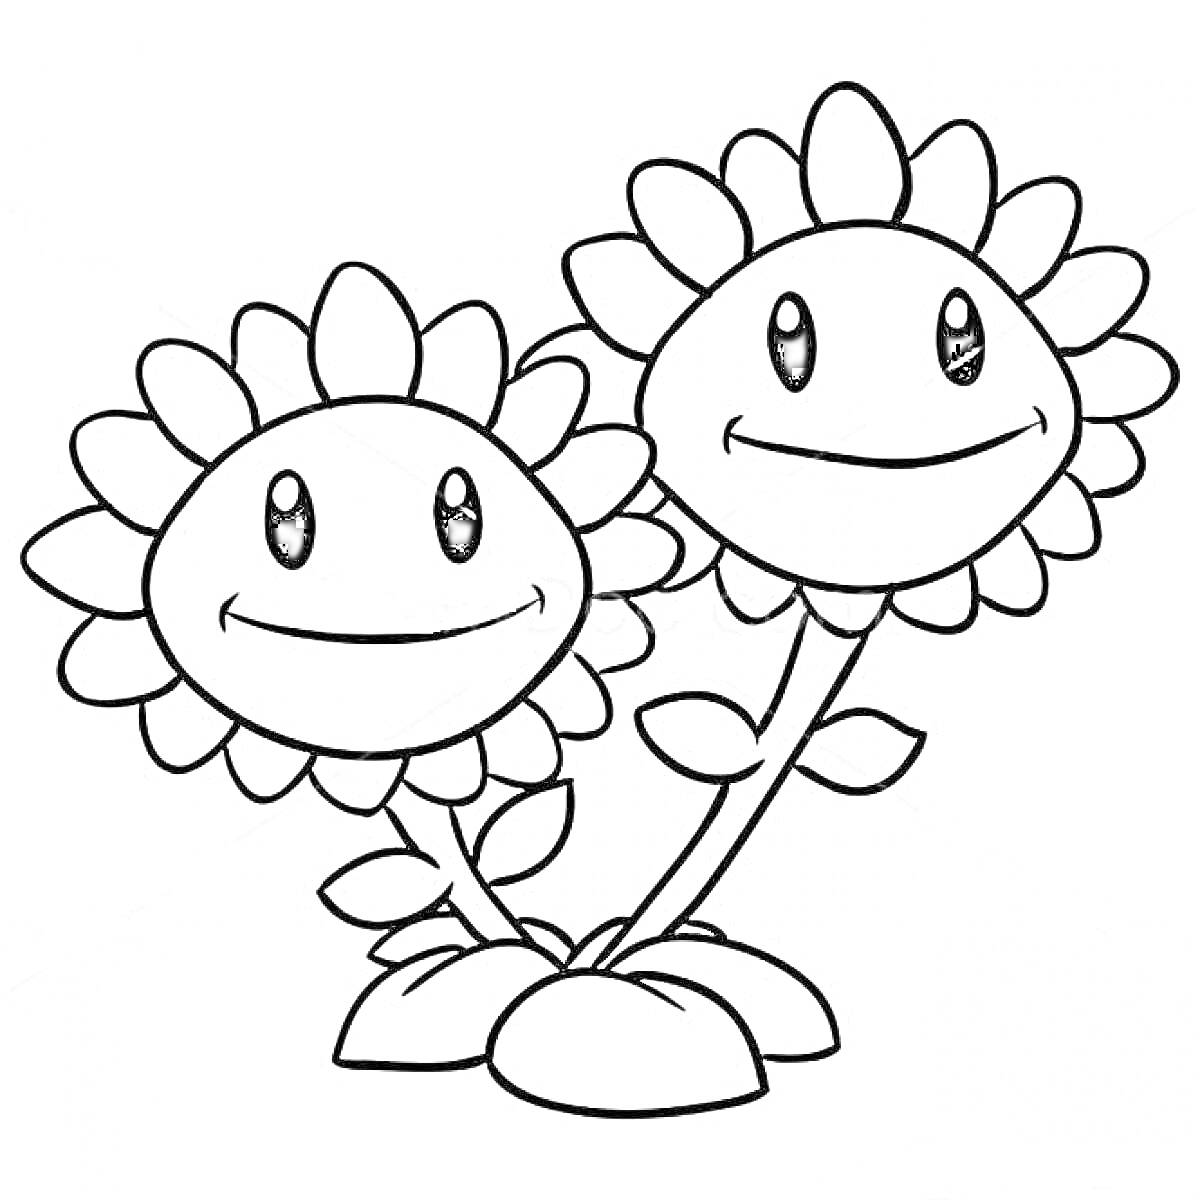 Две улыбающиеся подсолнечные цветы с листьями и корнями